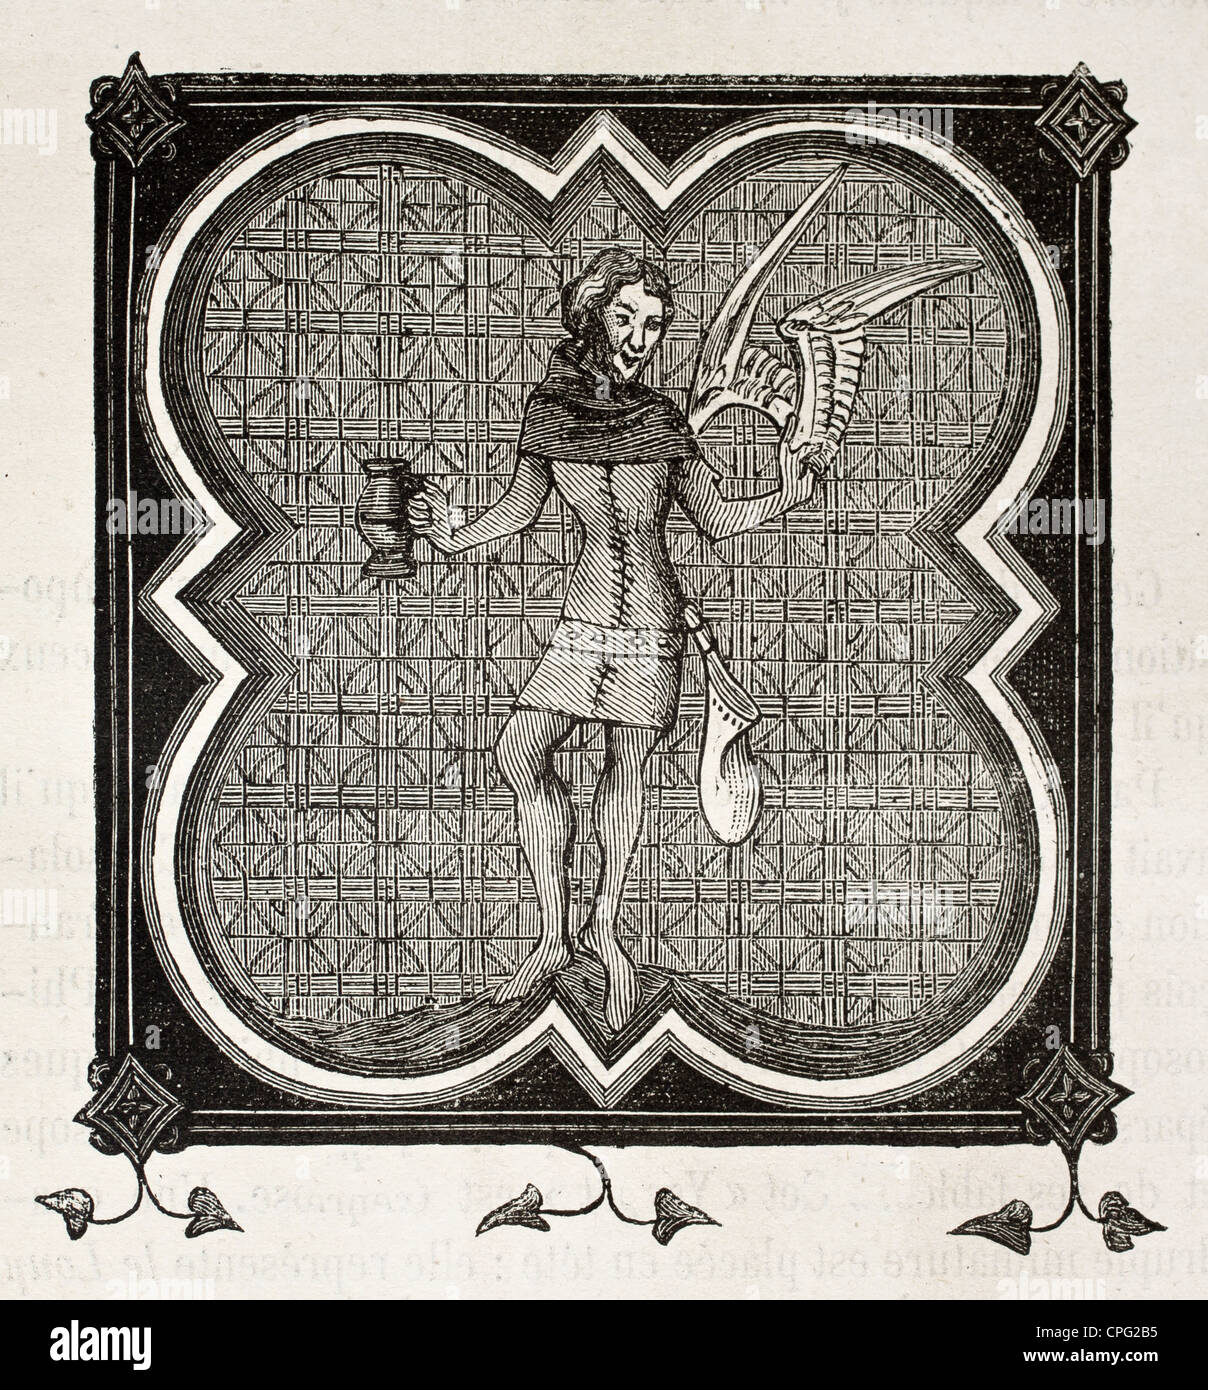 Garde de zitiert (Stadtwache), alte bizarre Abbildung auf altes Manuskript von Besancon Bibliothek Stockfoto